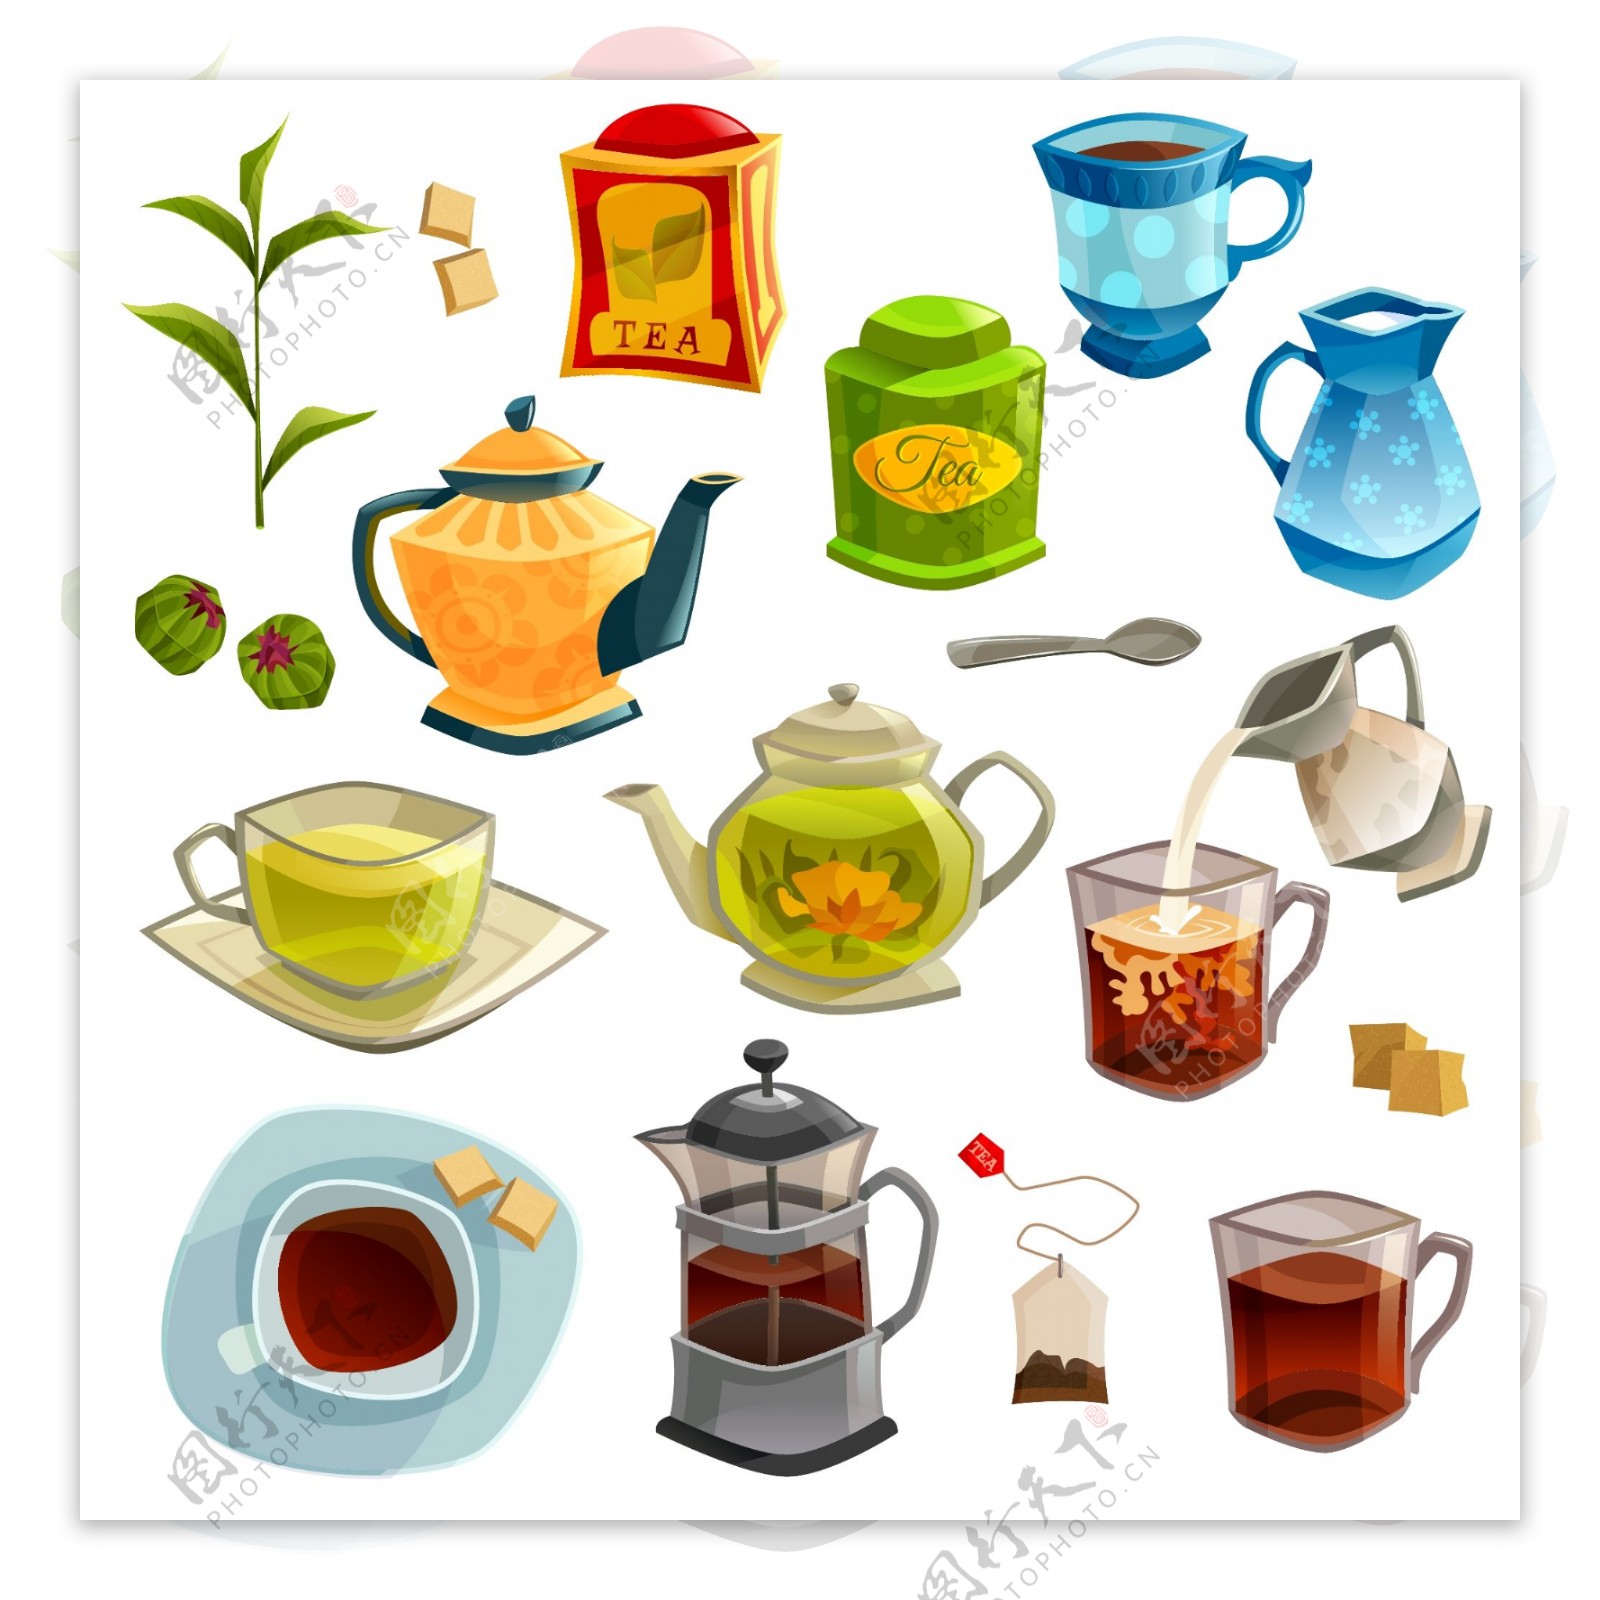 时尚传统茶具元素插画